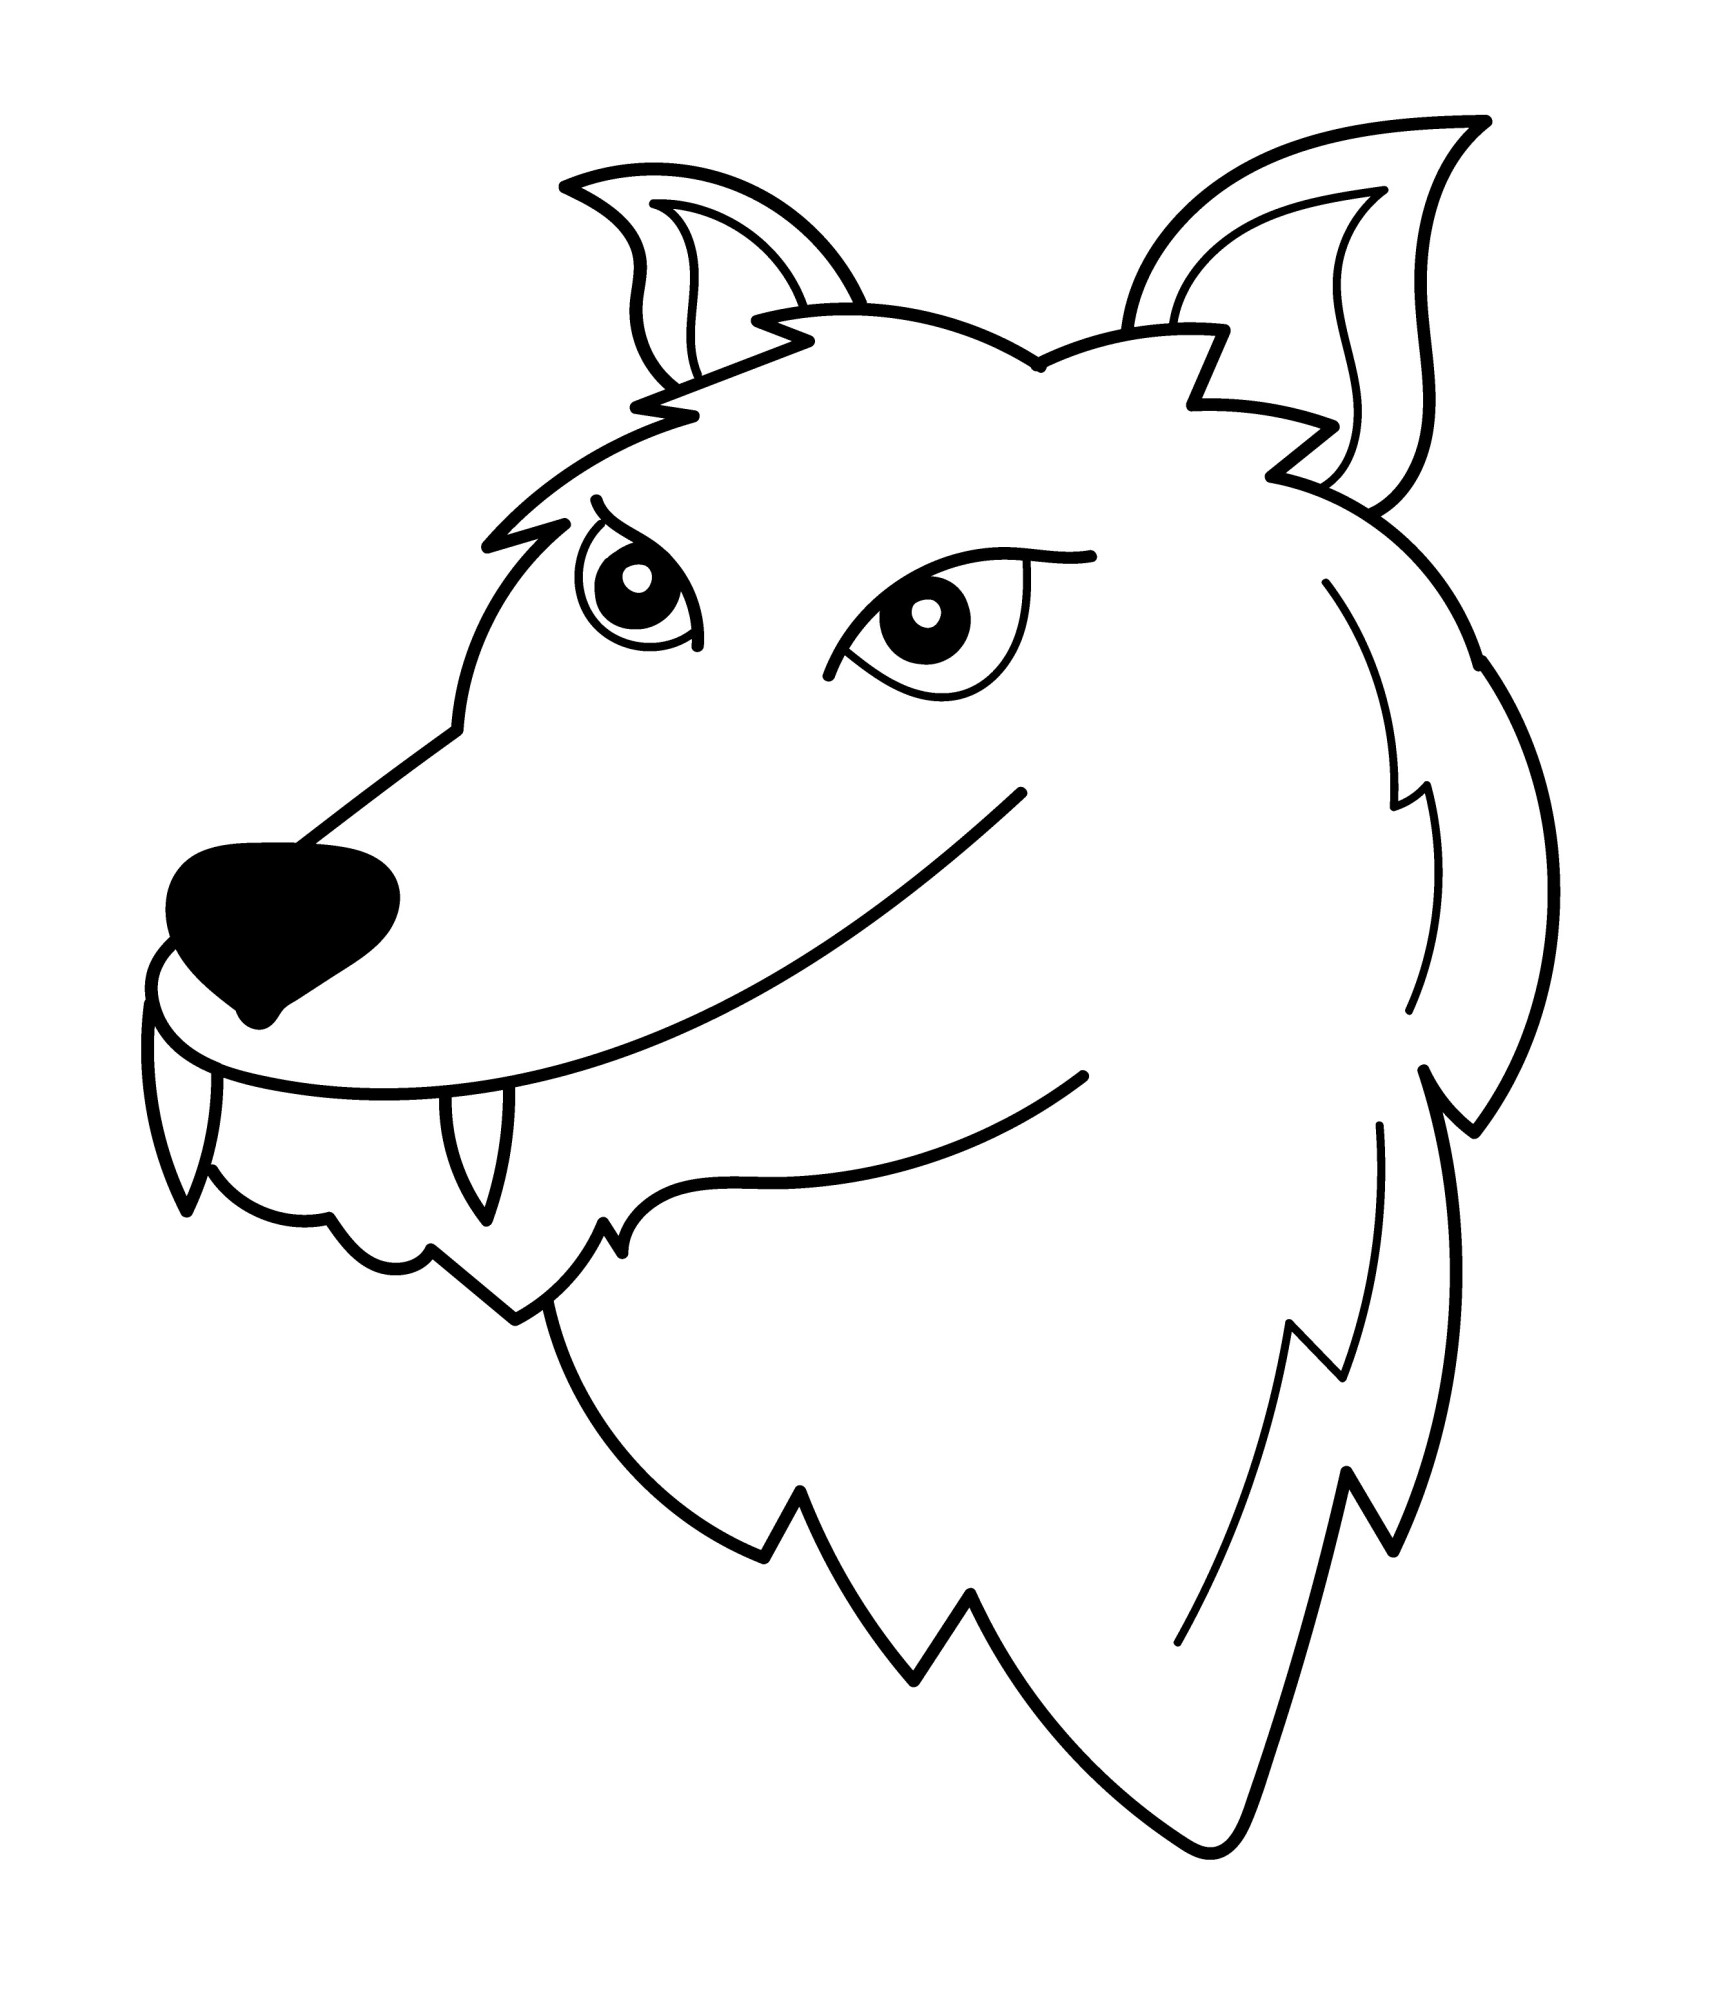 Раскраска для детей: голова волка с клыками